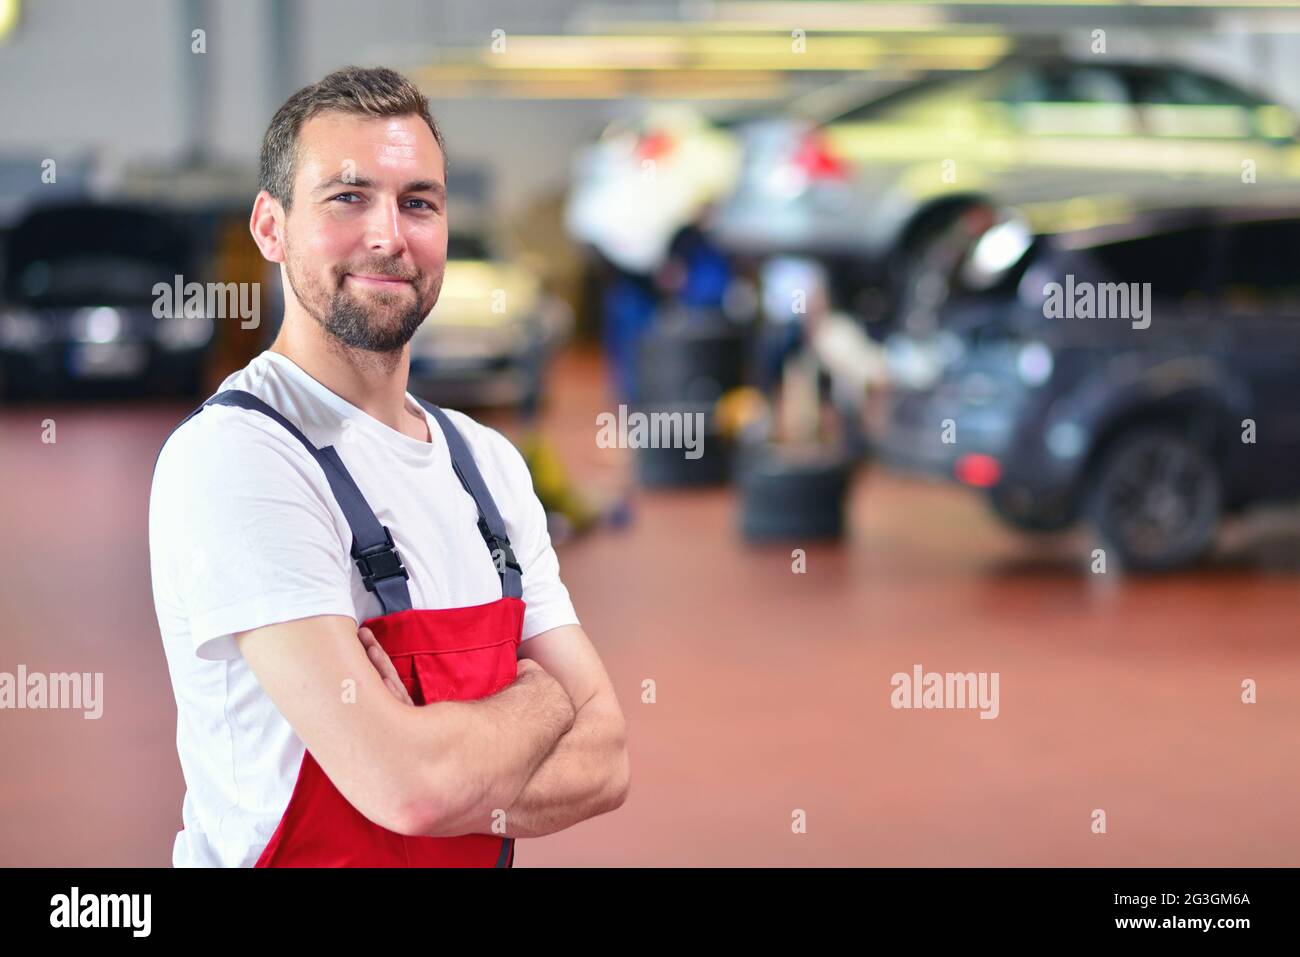 Porträt eines lächelnden Mechanikers in einer Autowerkstatt - Diagnose und Fehlersuche Stockfoto